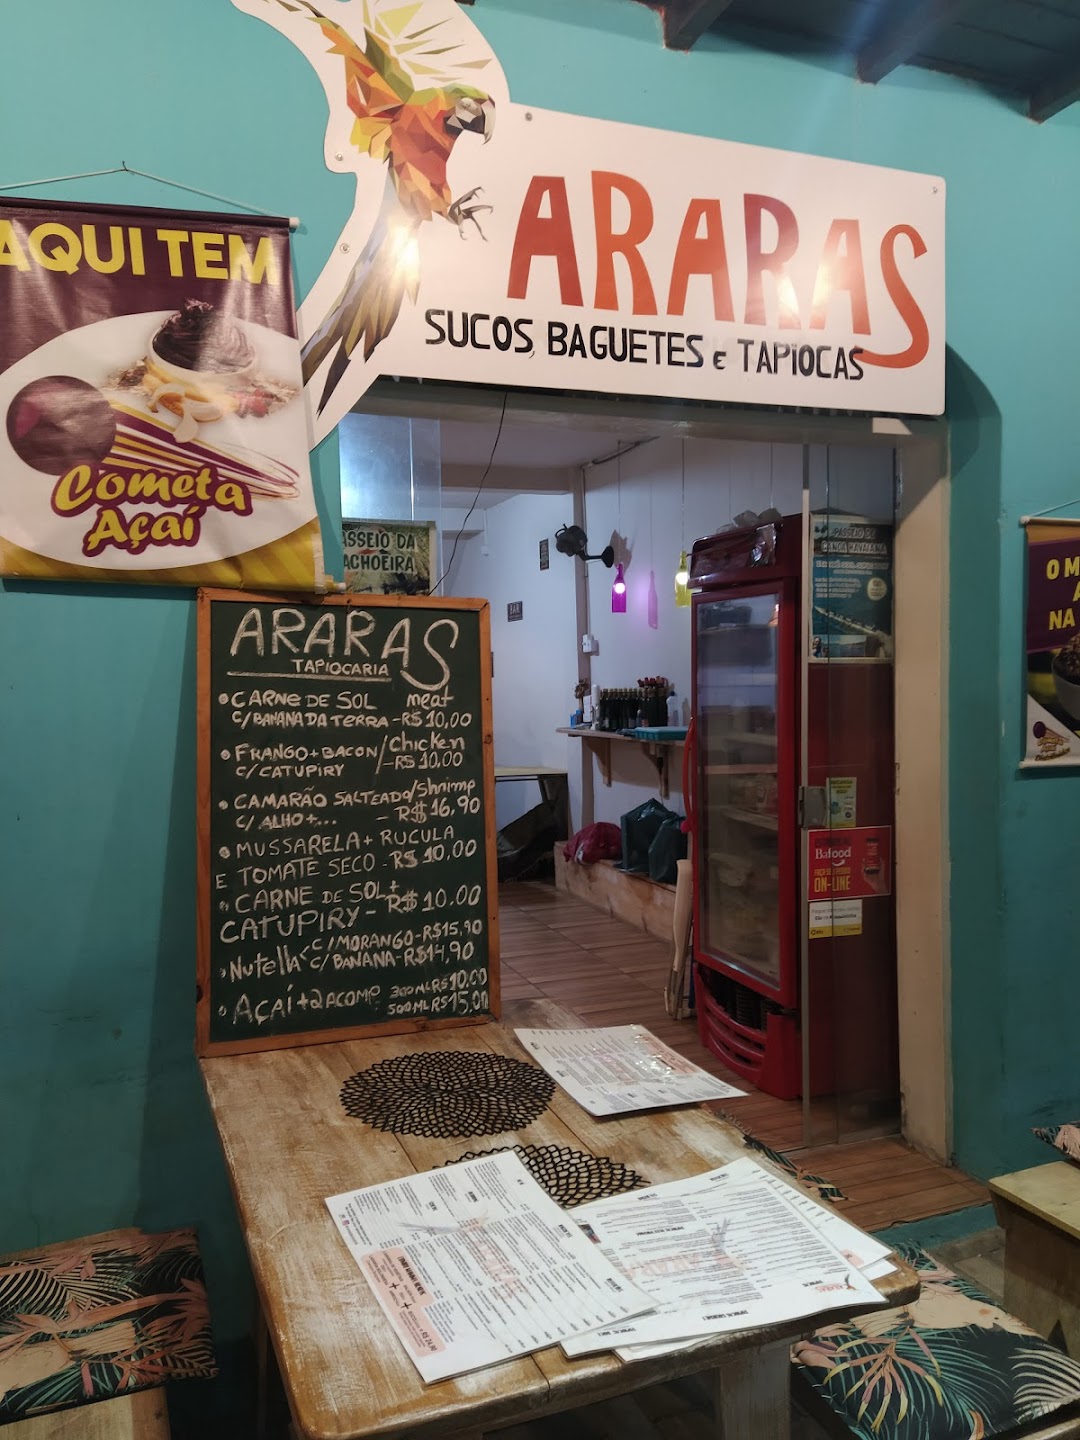 Araras Bar e Tapiocaria